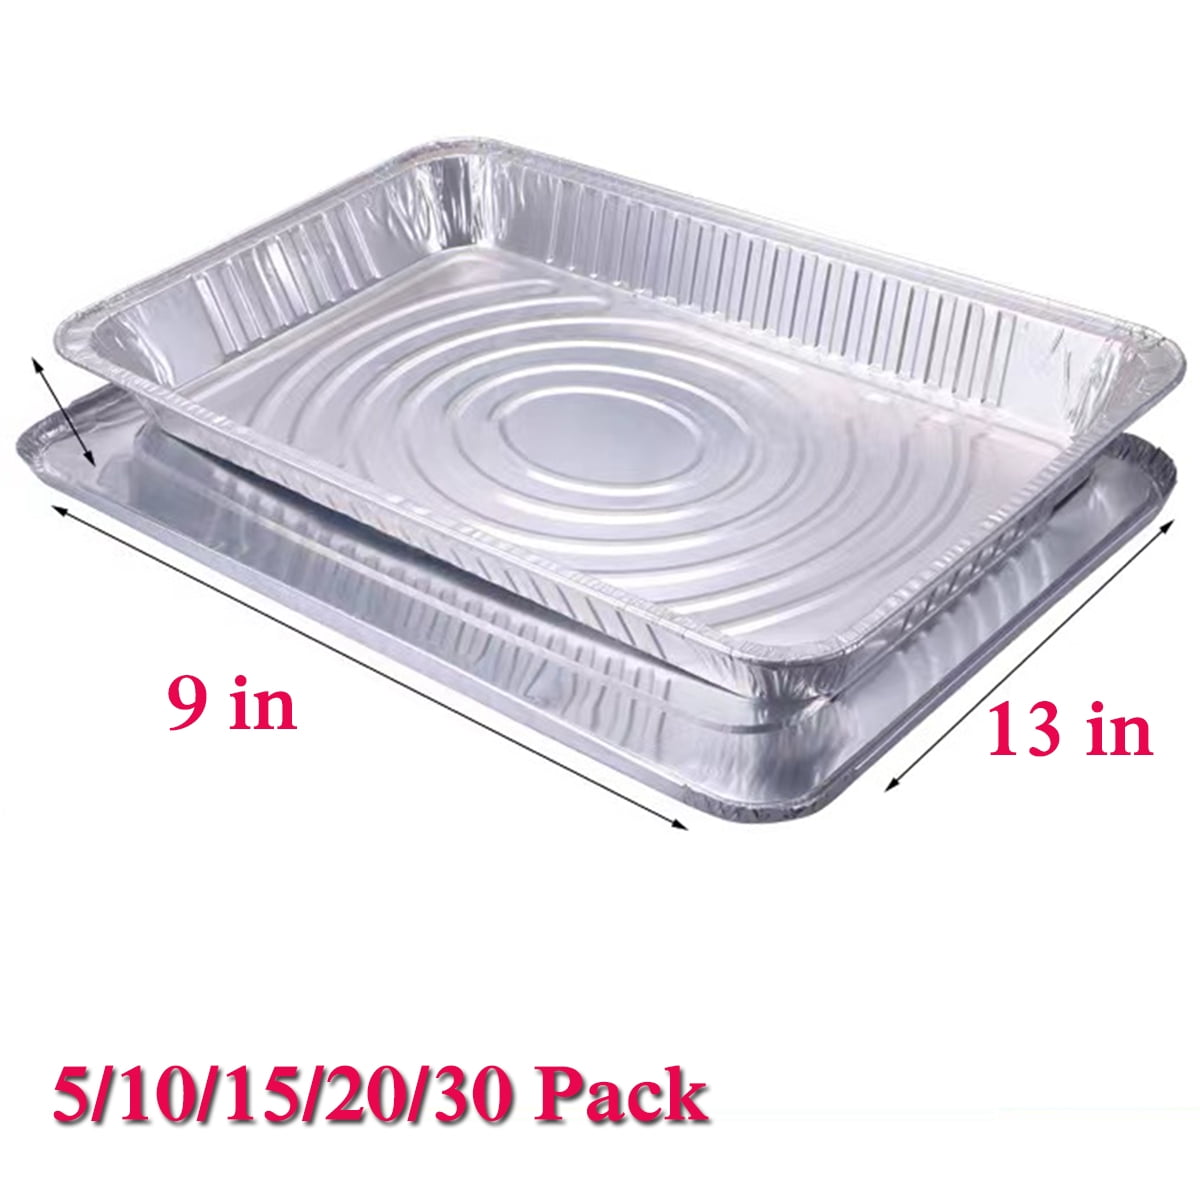 Quality Supplies Direct - Aluminum Pans 9 x 13 Disposable Foil Pans 1 Box (100 Box) Half Size Deep Steam Table Pans - Tin ZWPRLT4